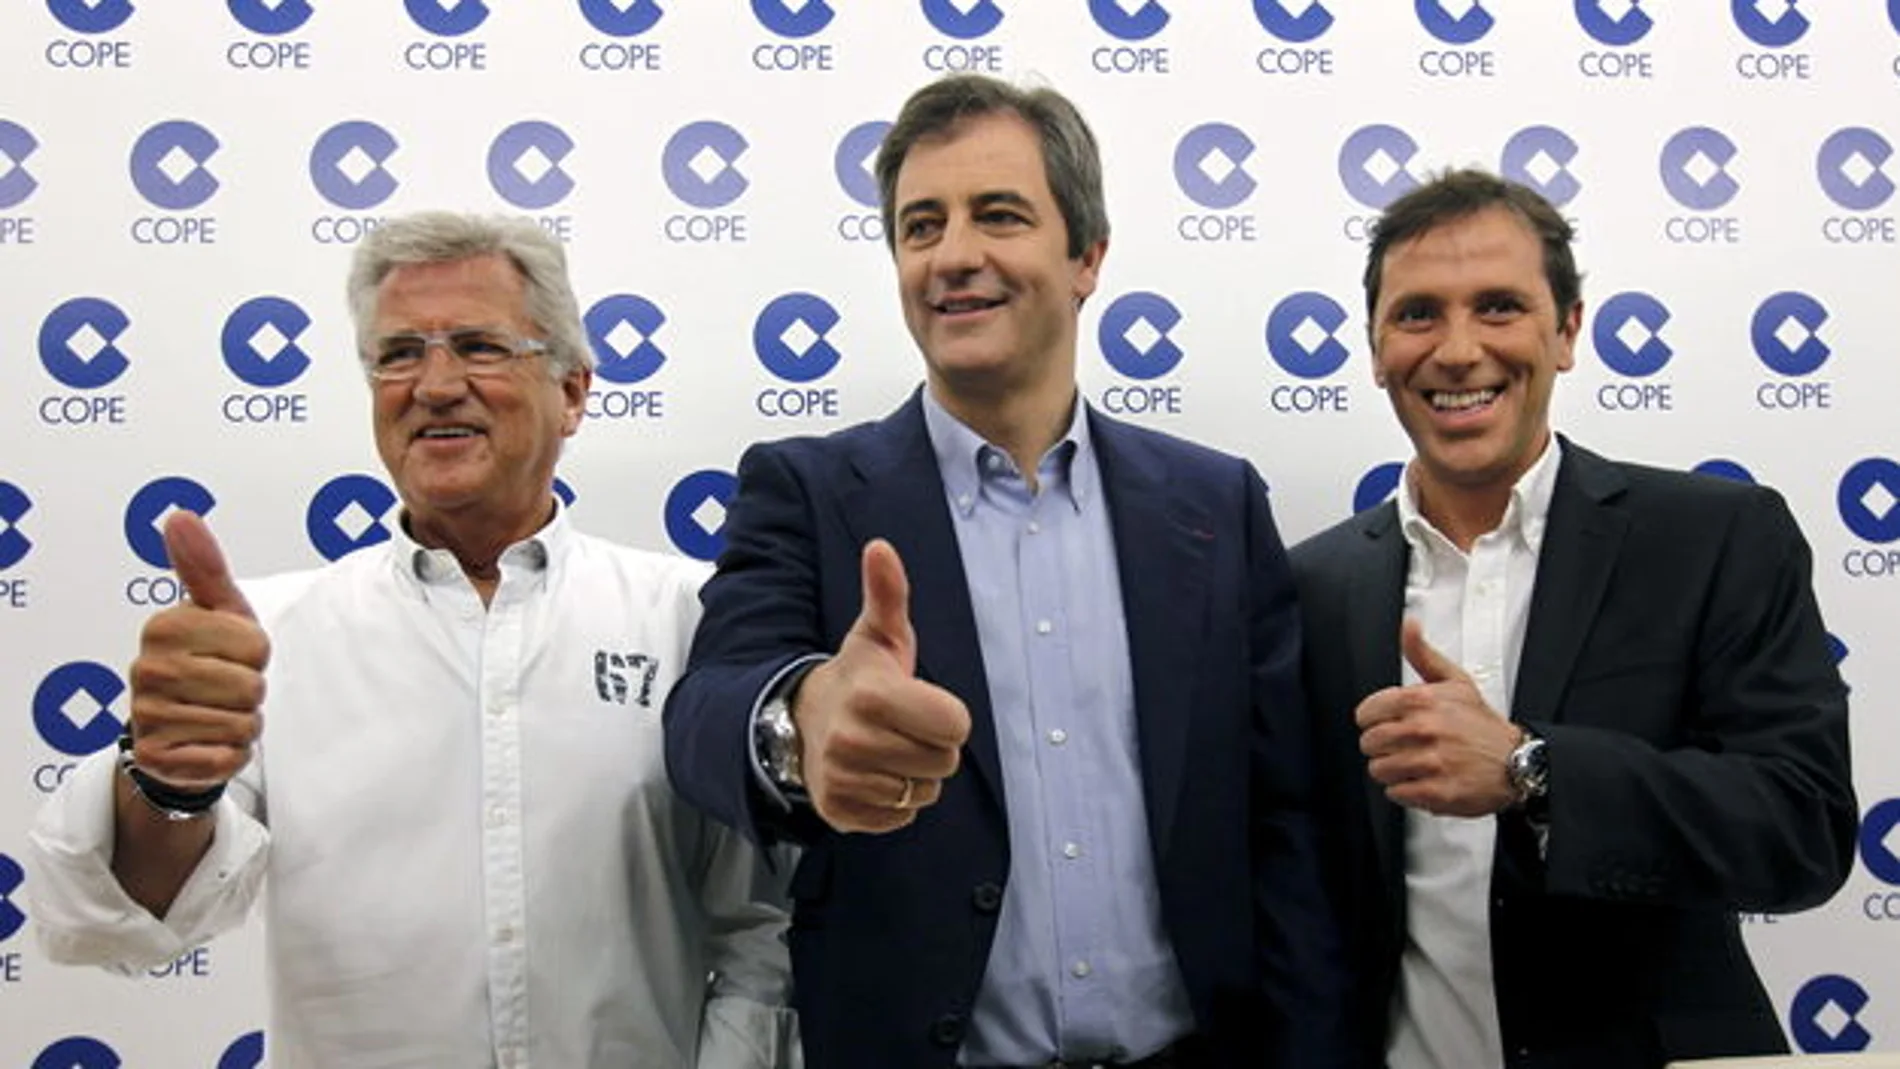 Pepe Domingo Castaño, Manolo Lama y y Paco González el día que anunciaron su renovación por la Cope